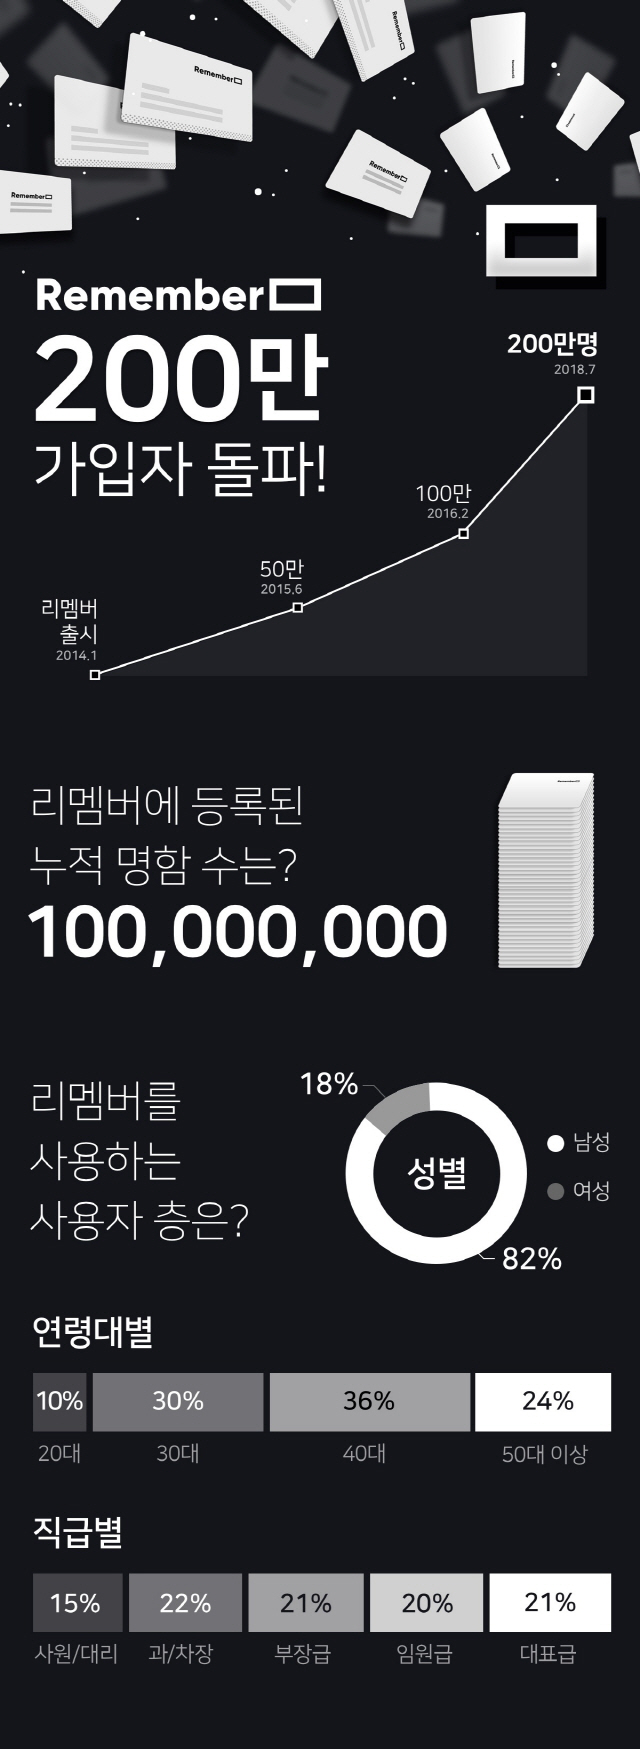 국민 명함 앱 '리멤버' 200만명 돌파 쾌거